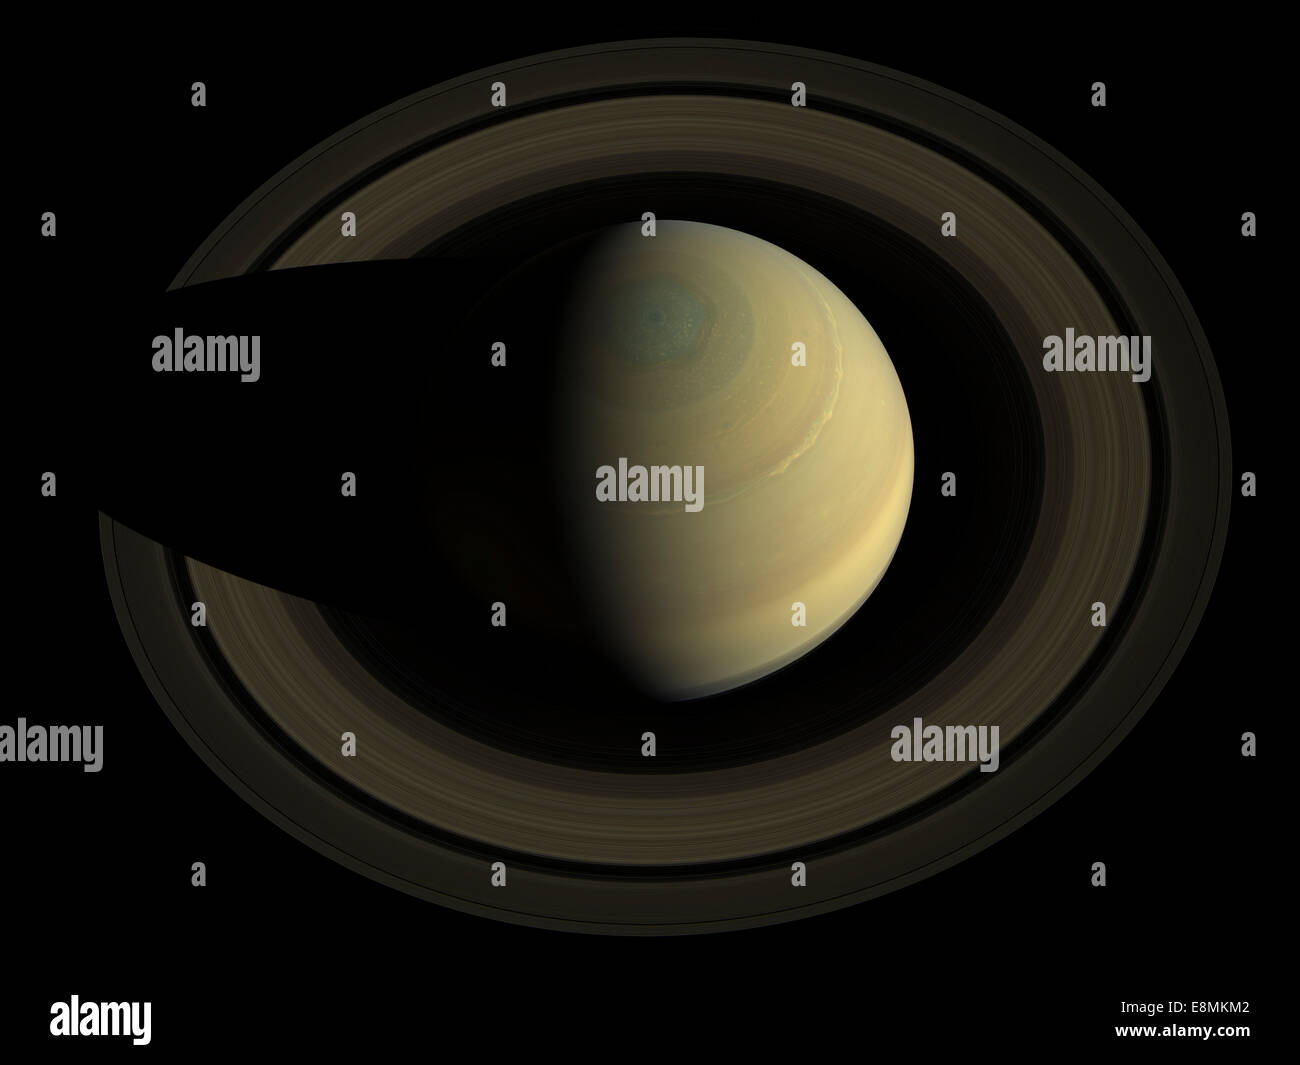 Mosaico en color natural del planeta Saturno y sus anillos principales. Saturno deportes bandas de diferente color de tiempo en esta imagen. El Foto de stock